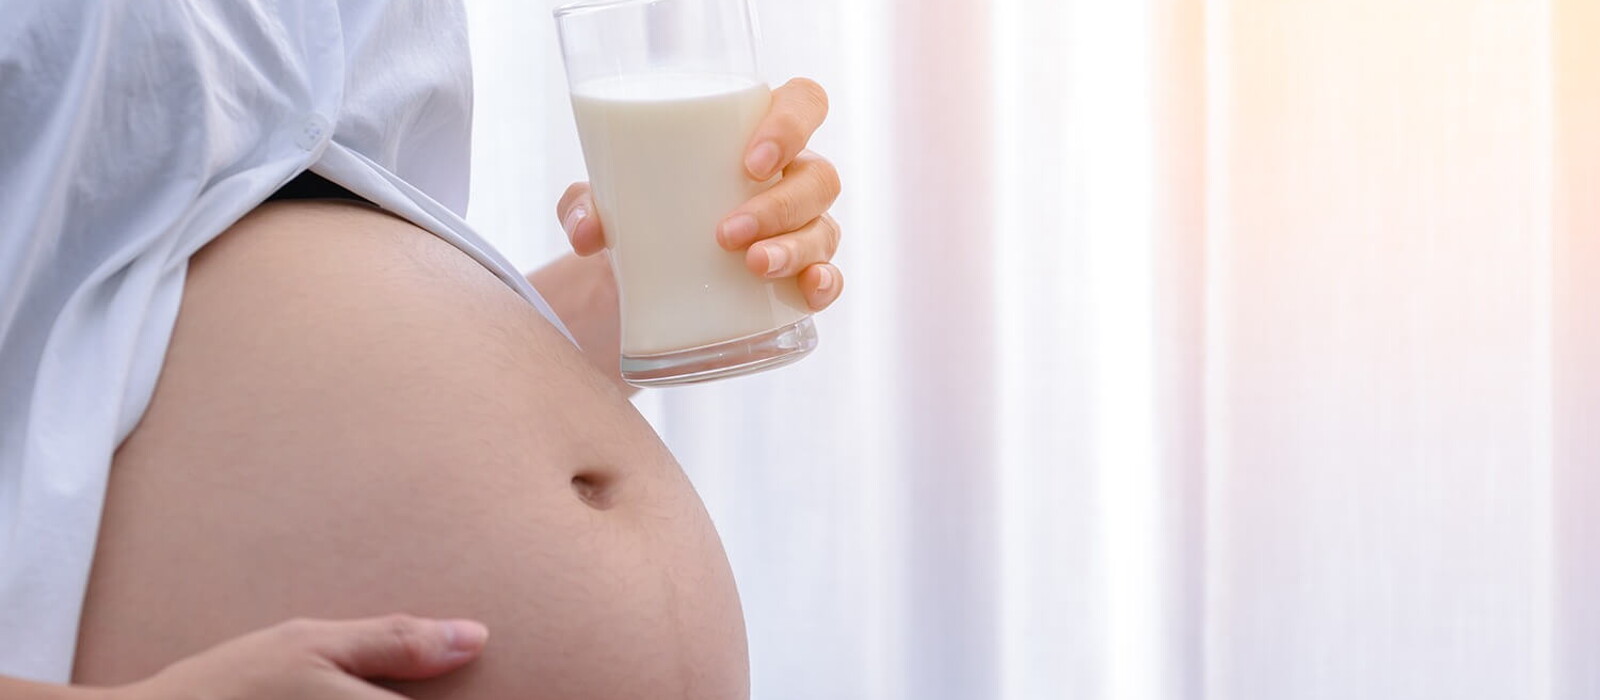 นมคนท้อง นมบำรุงครรภ์ แคลเซียมสูง นมสำหรับคุณแม่ตั้งครรภ์